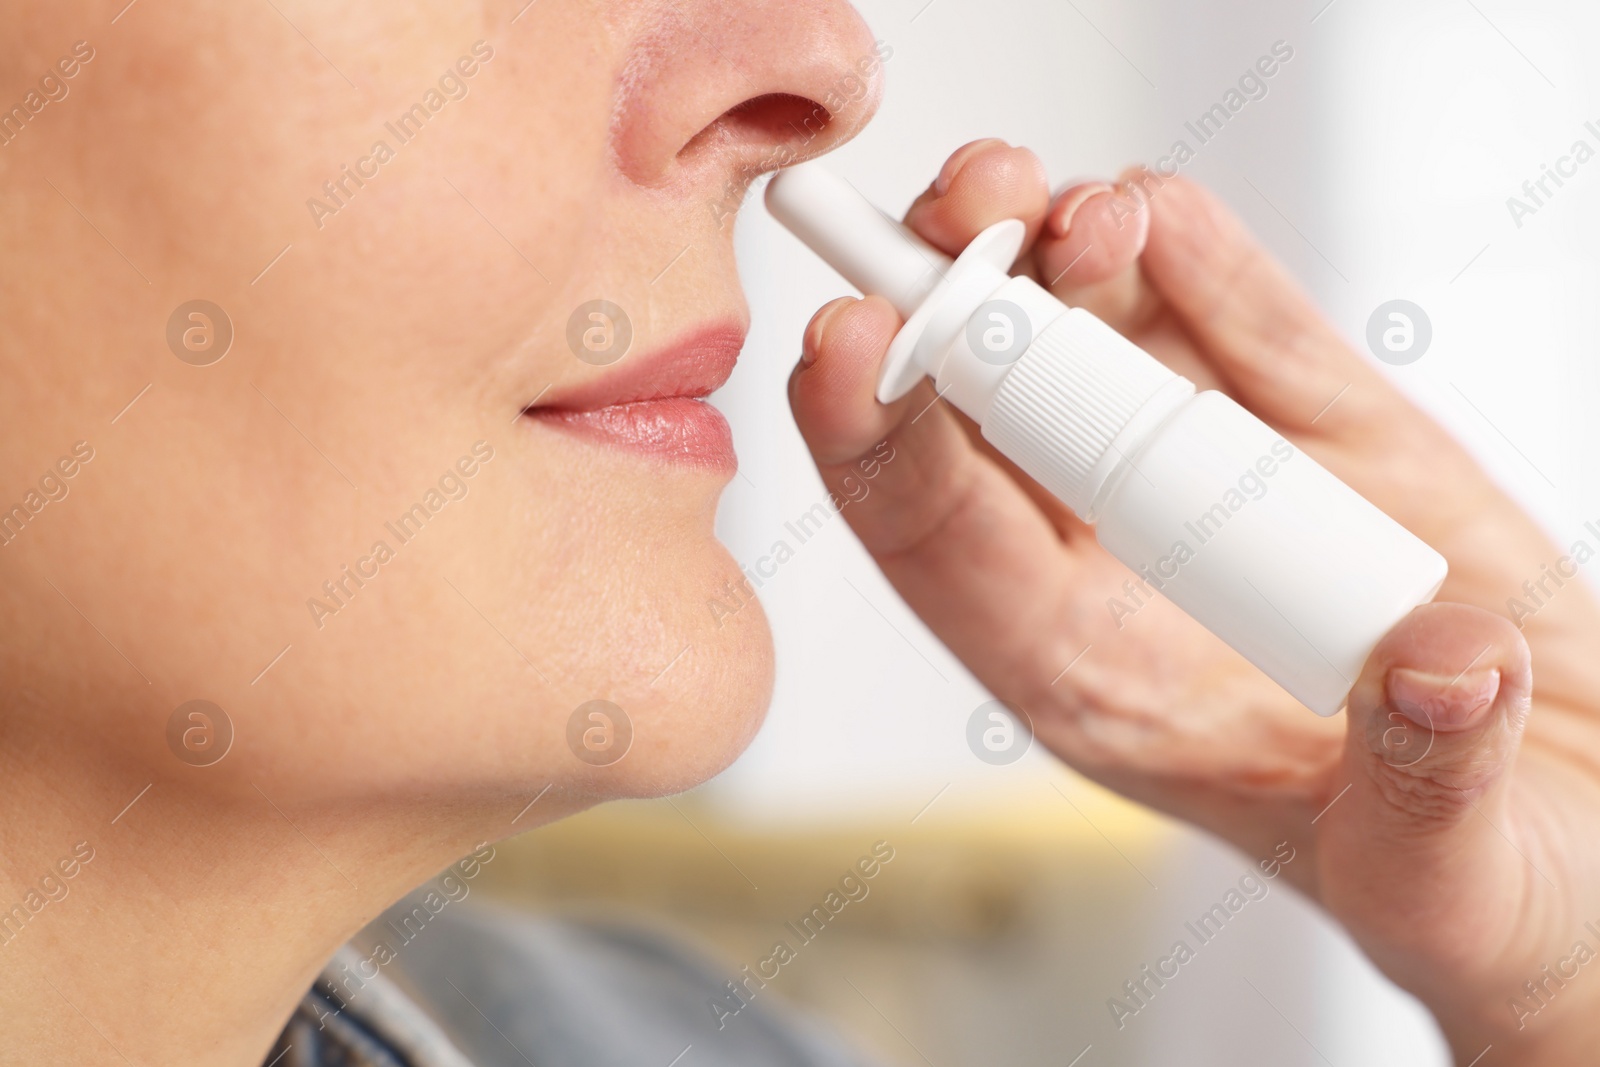 Photo of Medical drops. Woman using nasal spray indoors, closeup